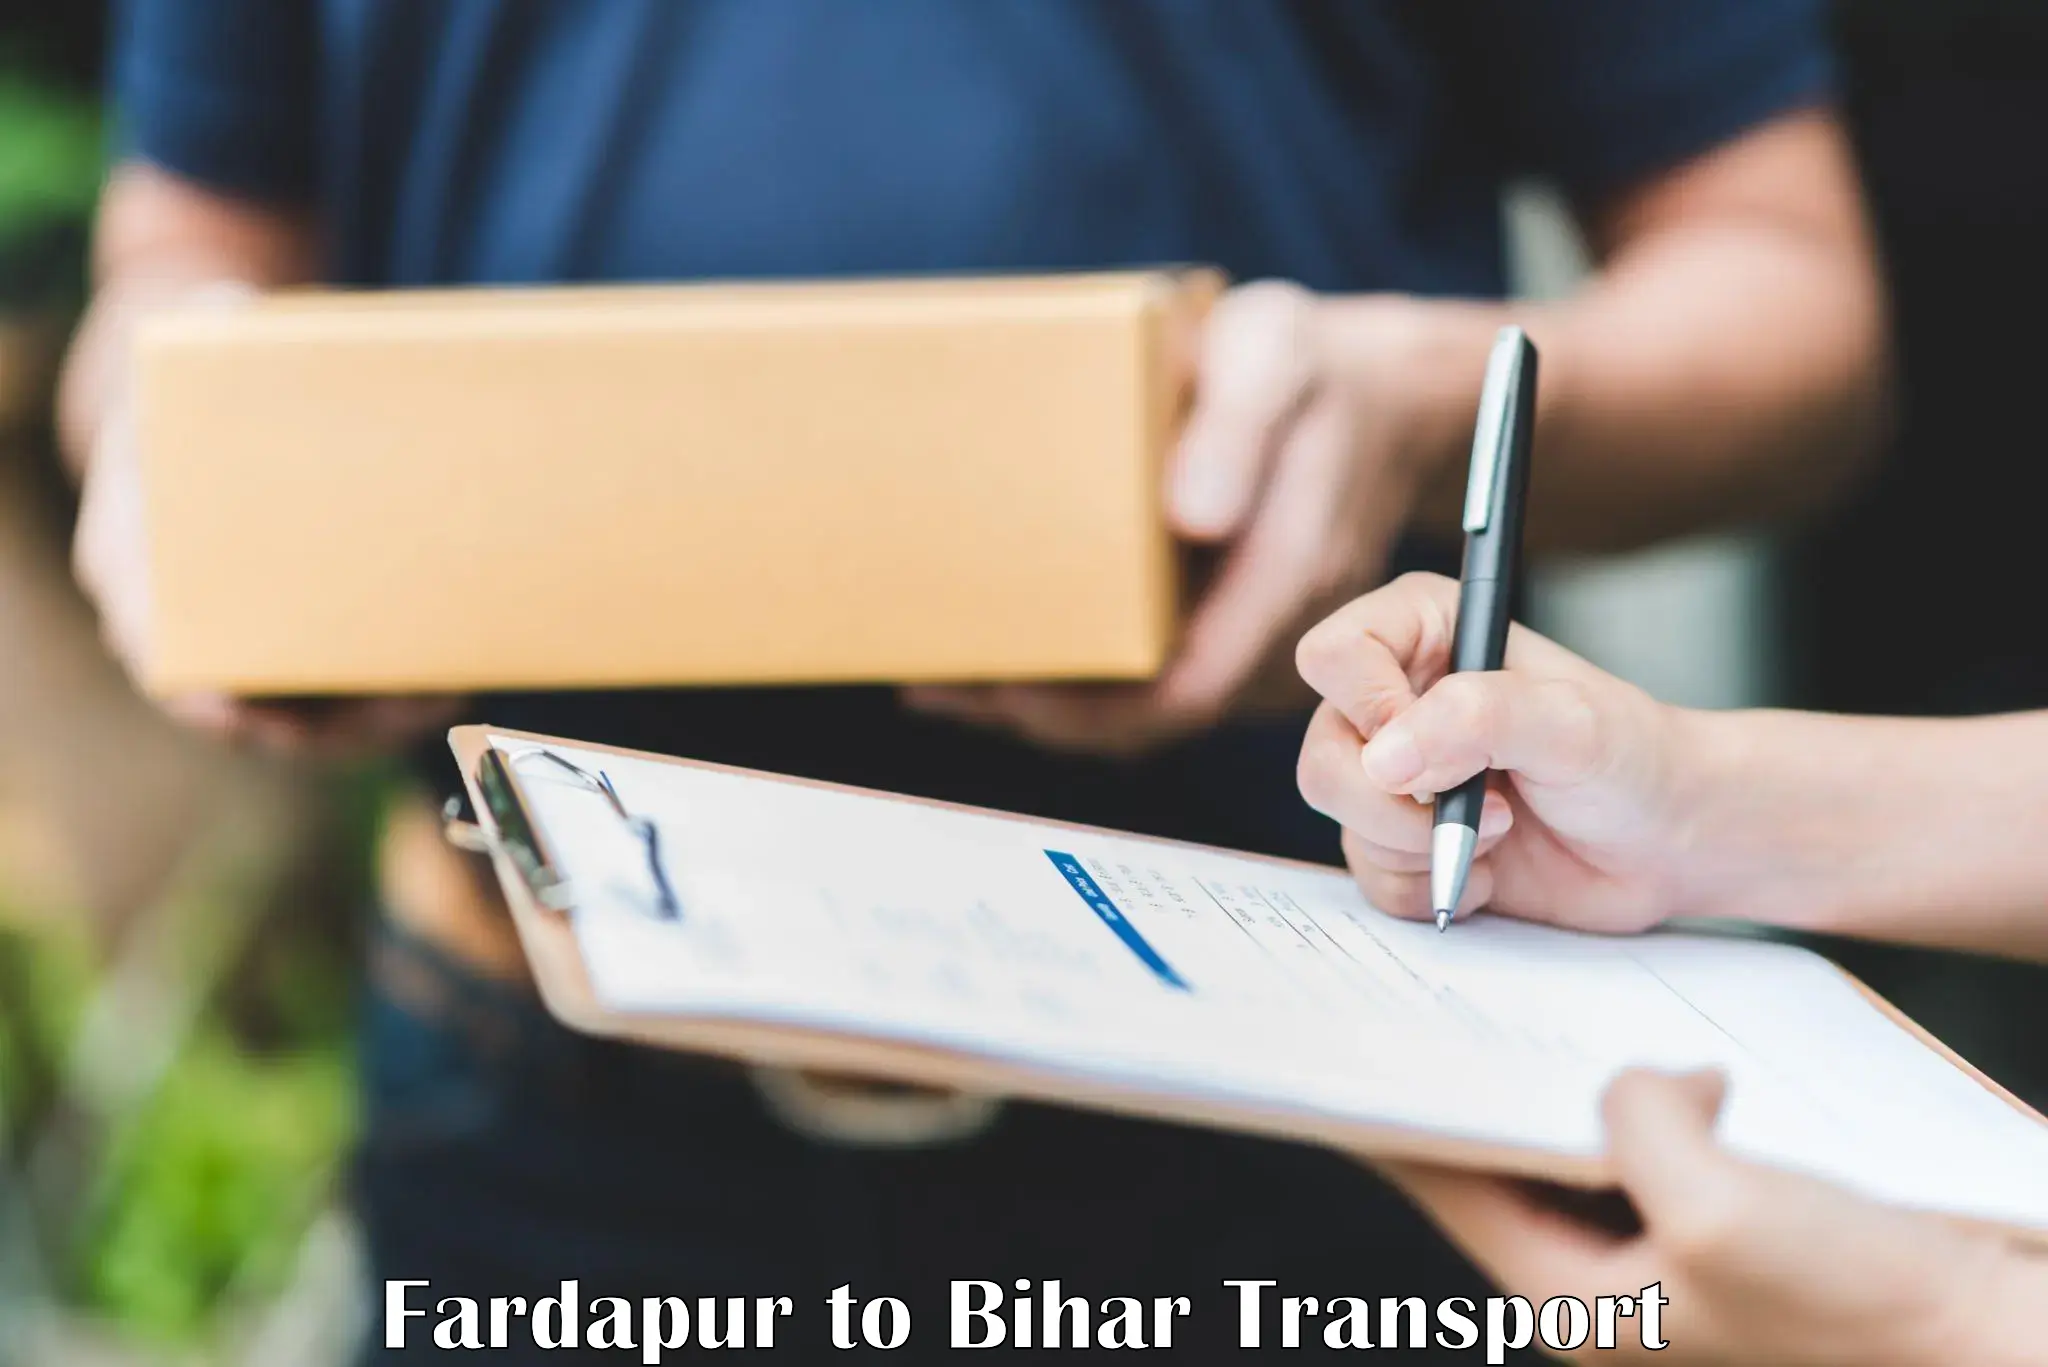 Daily transport service Fardapur to Sahebpur Kamal